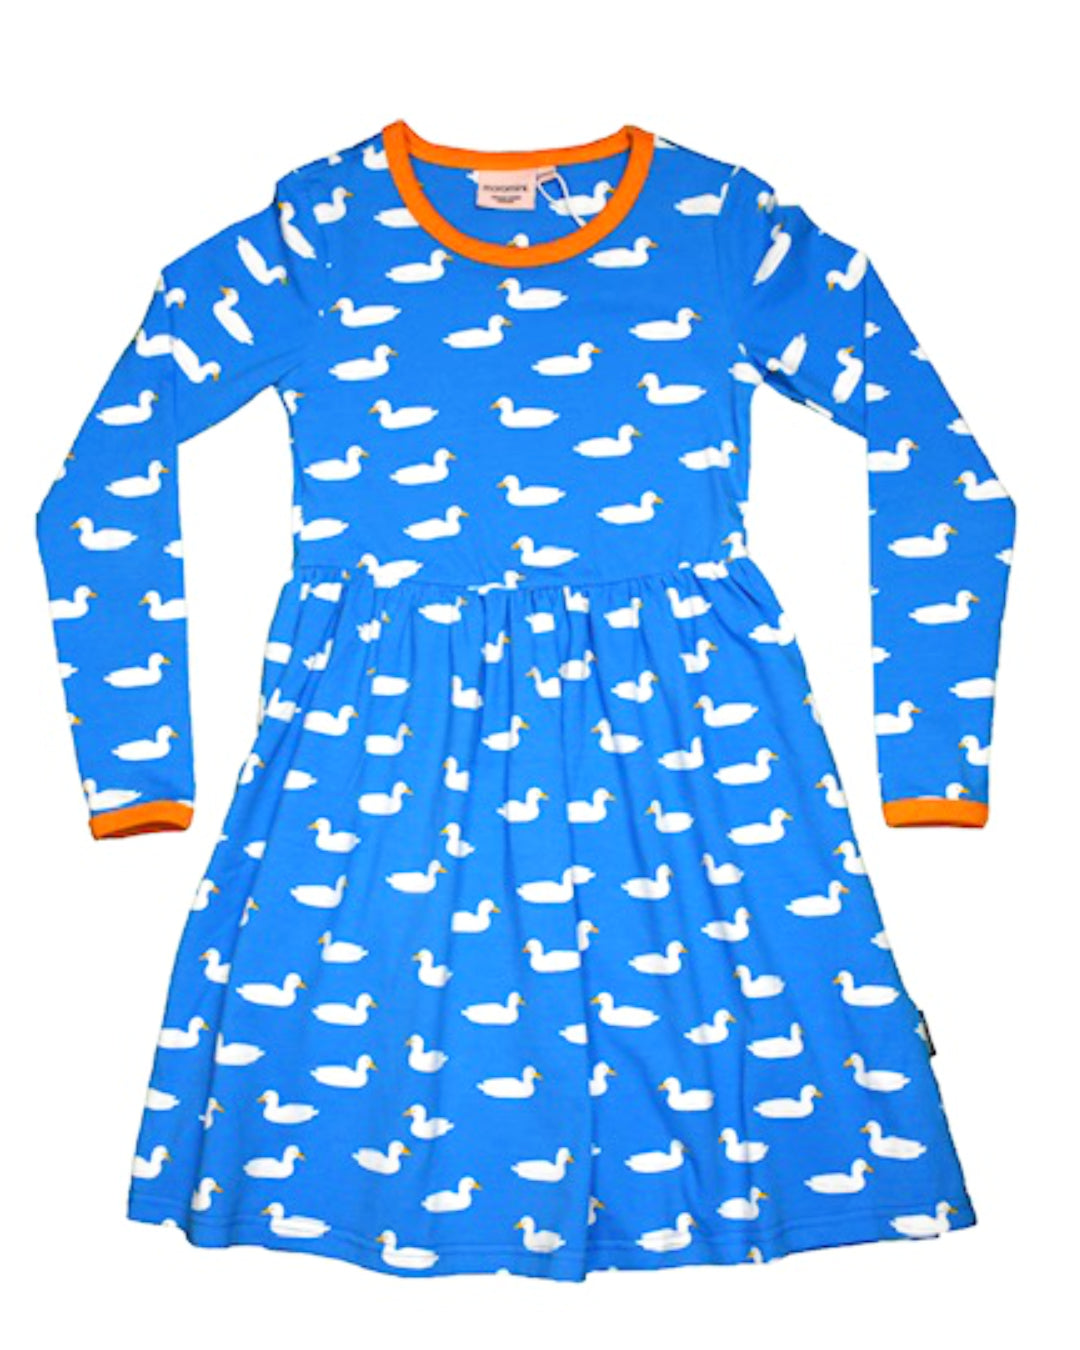 Langarm Kleid von moromini in Blau mit weißen Enten aus Biobaumwolle